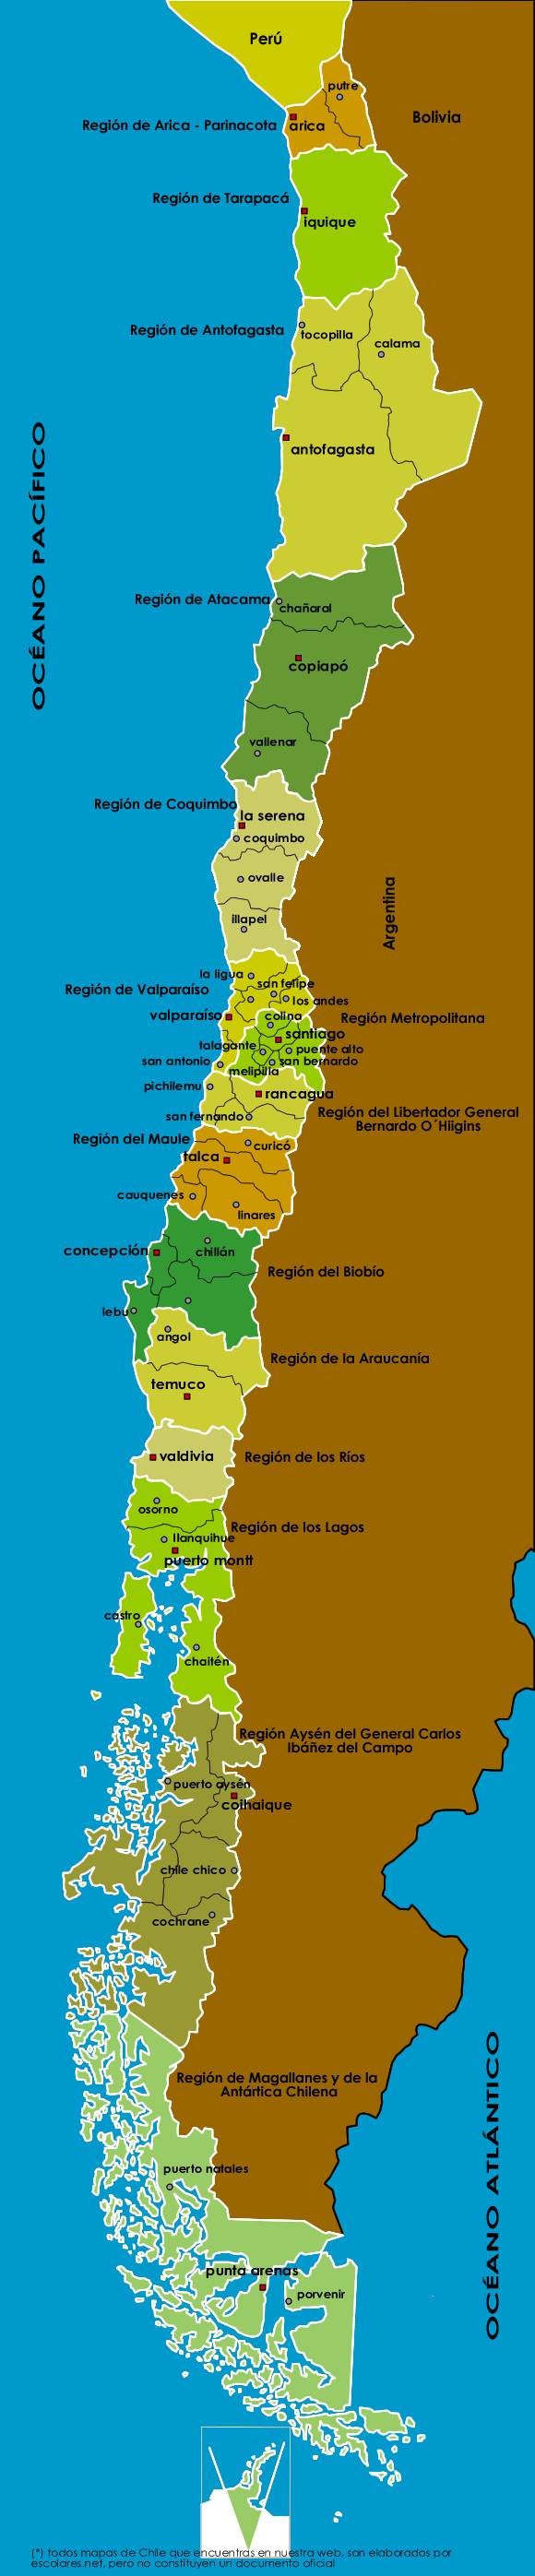 Mapa Político Administrativo de Chile con sus 15 Regiones